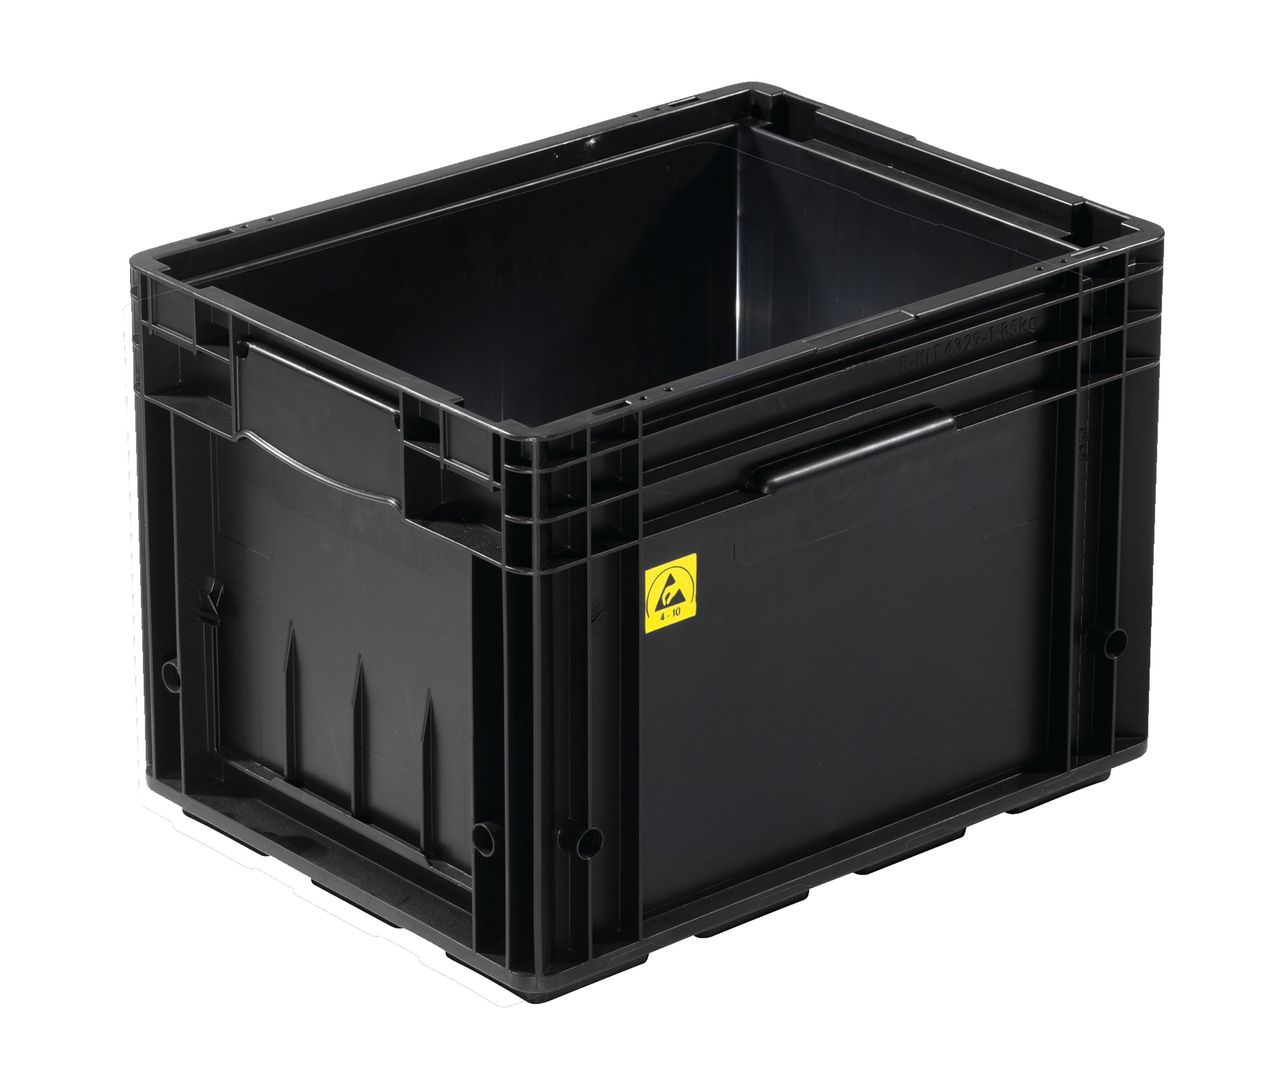 ESD-Behälter VDA-R-KLT 
400 x 300 x 280 mm - VDA-R-KLT 4129 ESD  Farbe: schwarz